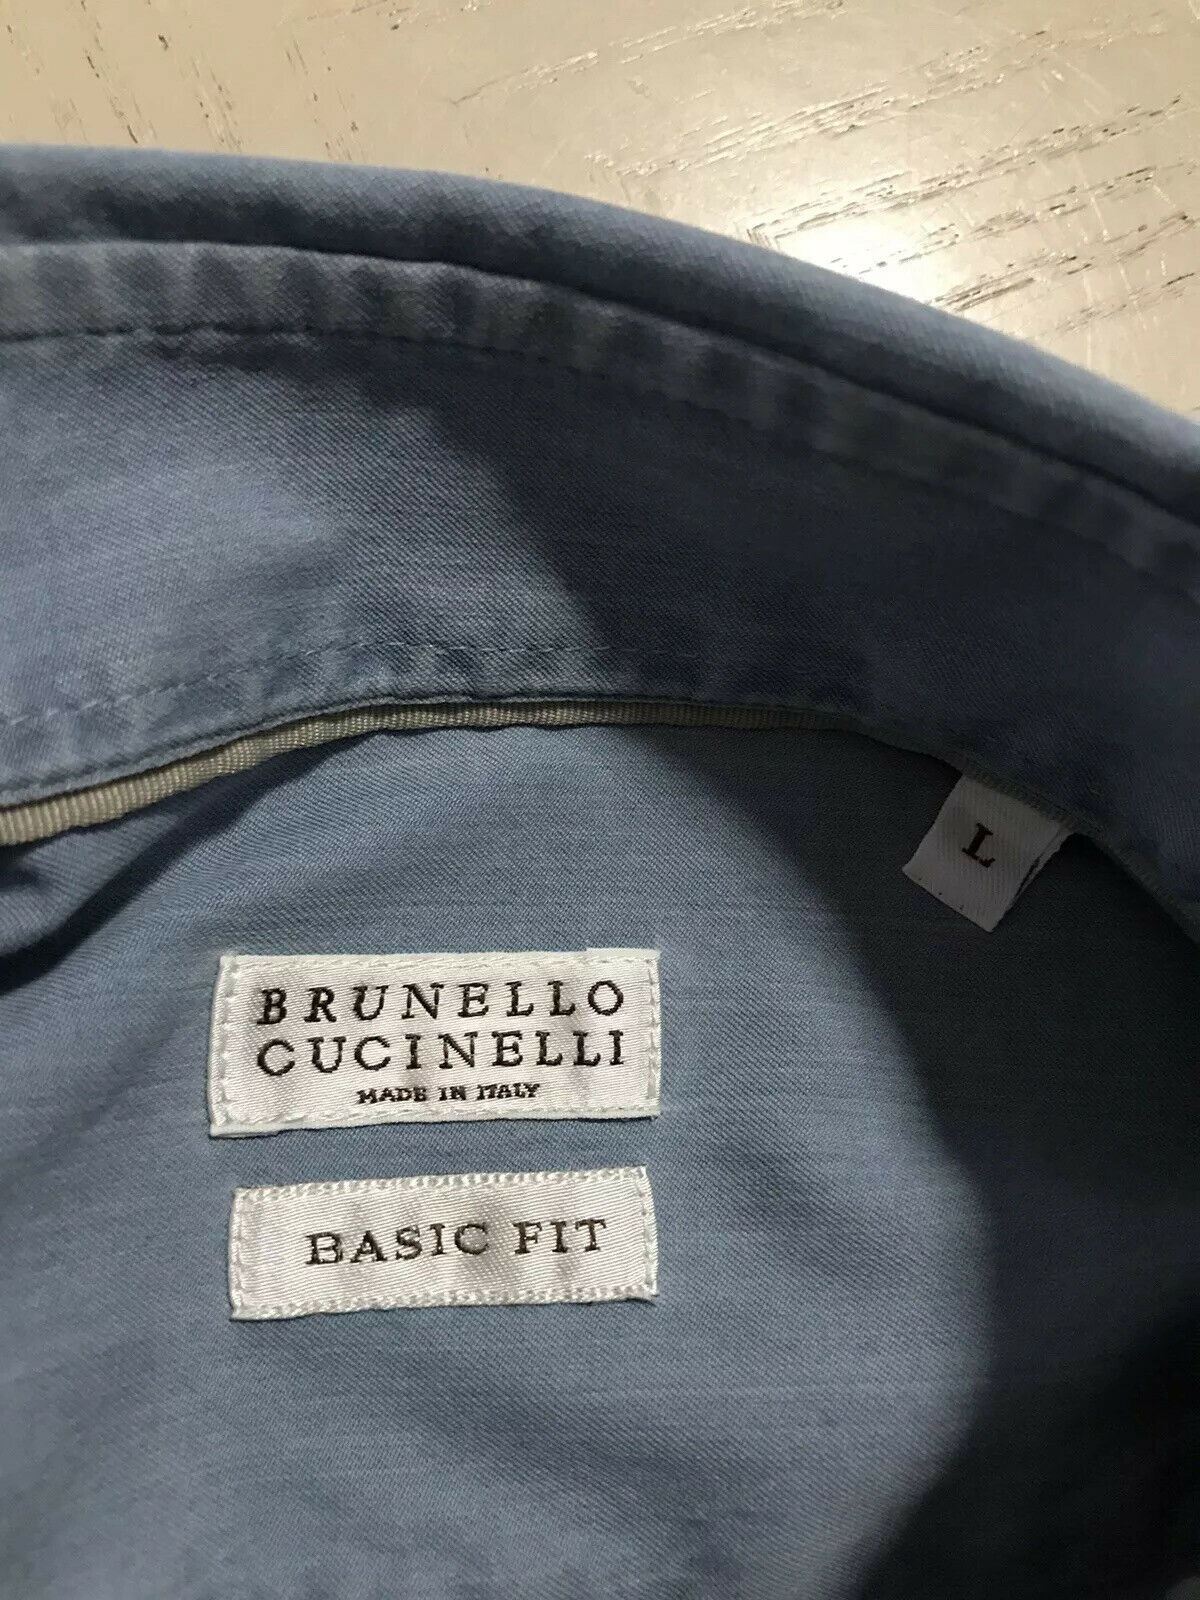 Мужская джинсовая рубашка базового кроя Brunello Cucinelli стоимостью 795 долларов, синяя, L, Италия